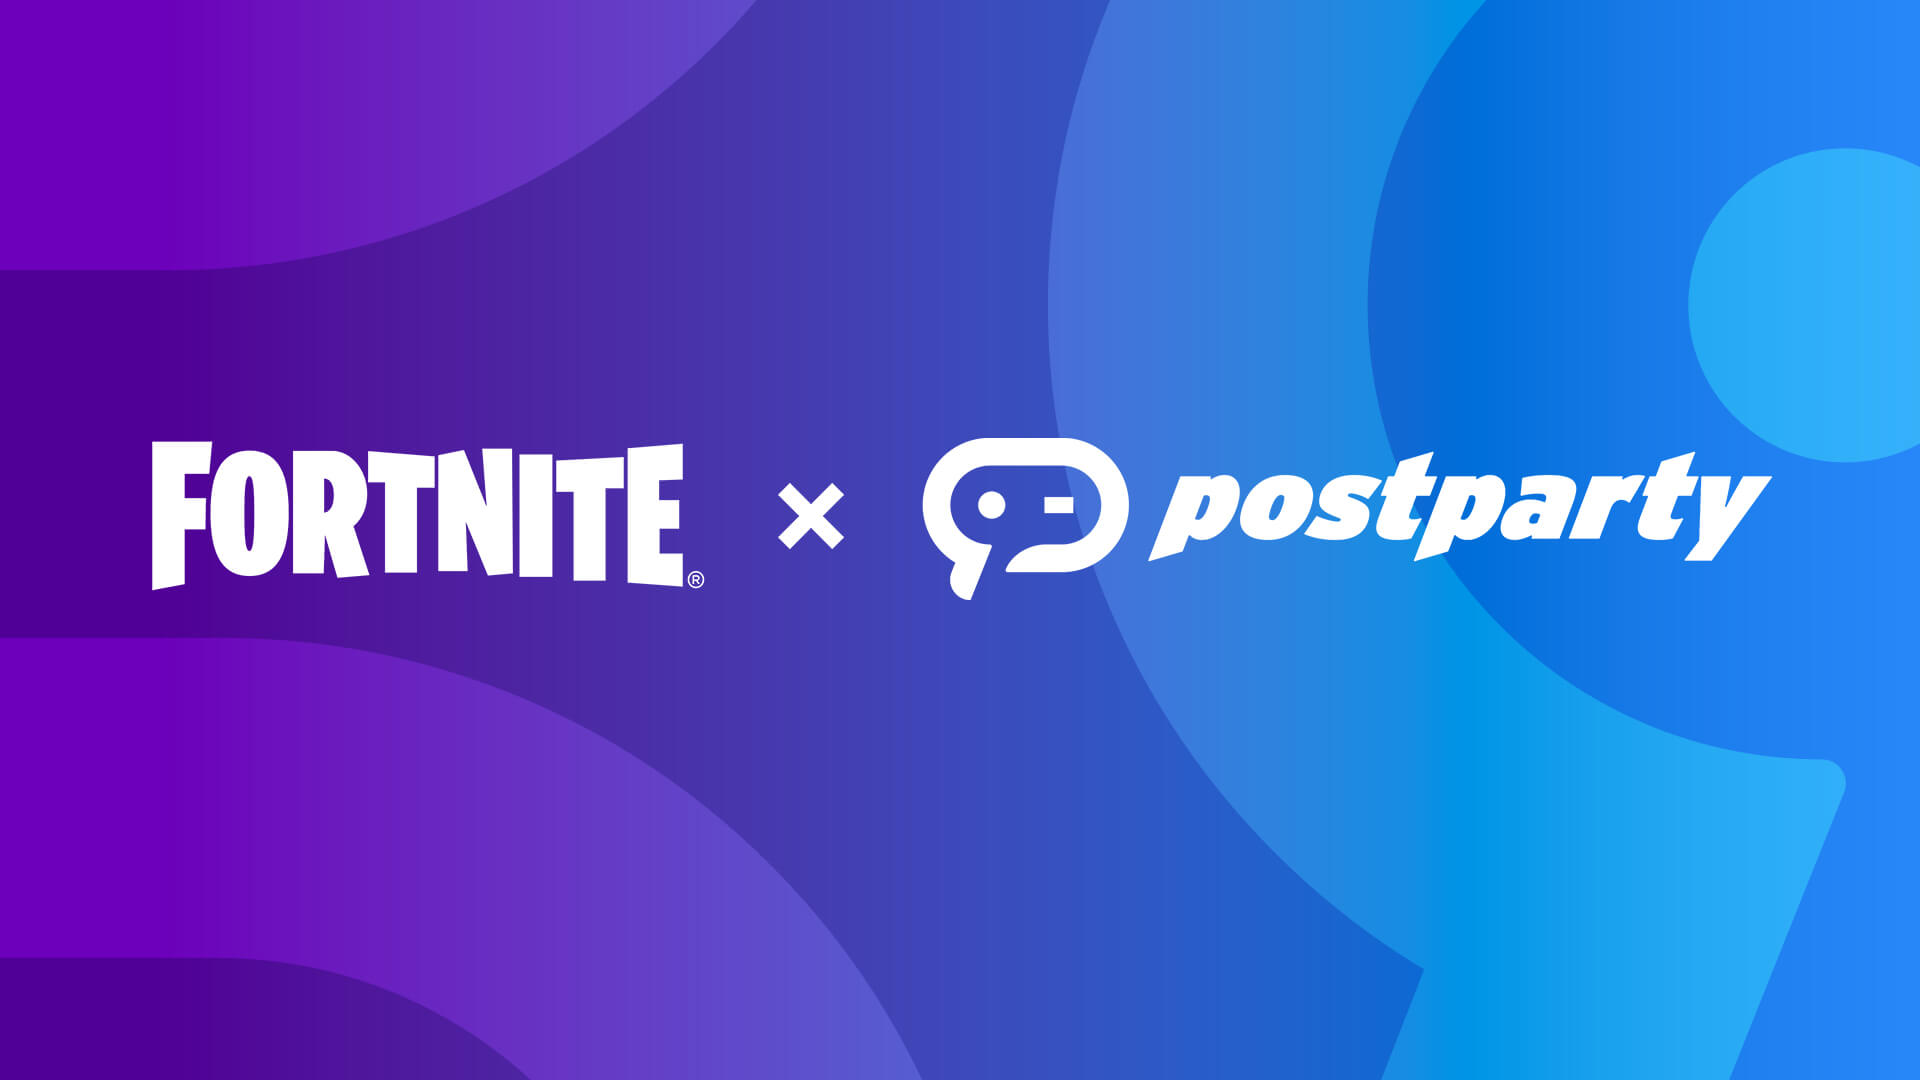 Imagem da nova parceria entre Fortnite e Postparty, anunciada pela Epic Games